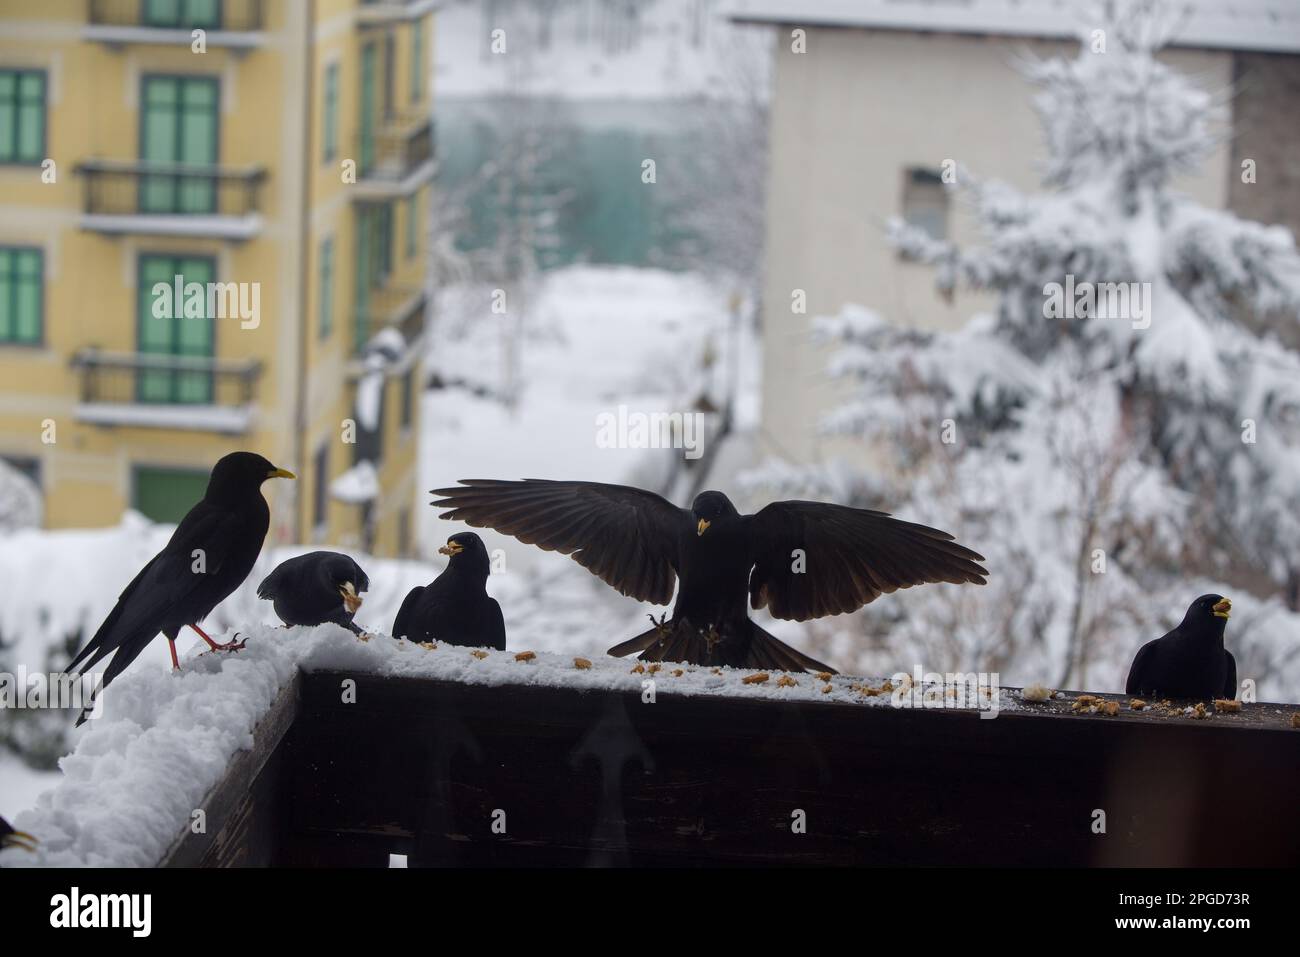 un gruppo di gracchi alpini si avvicina alla ricerca di cibo, uccelli neri sul balcone di una casa si nutrono Stock Photo